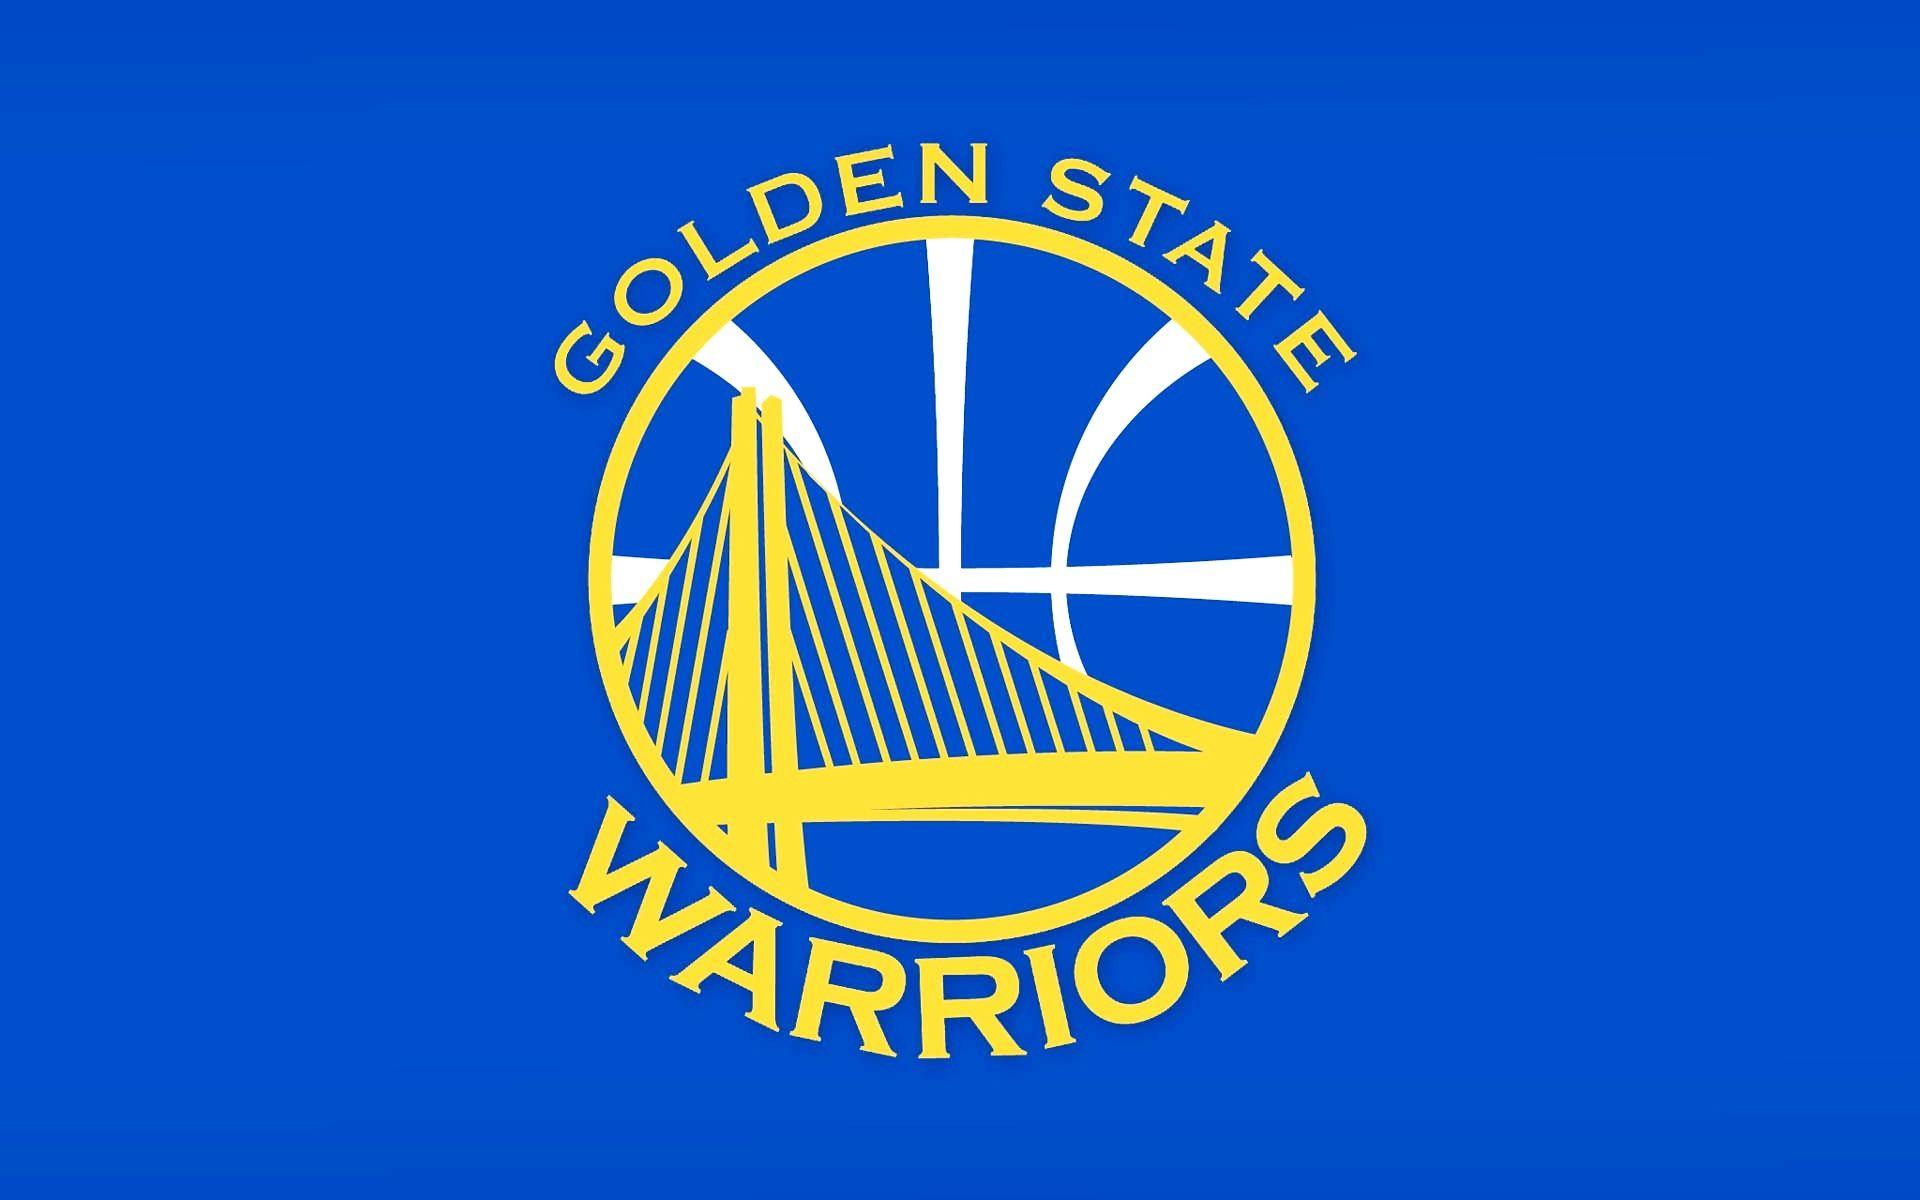 Golden State Warriors Logo Wallpaper Basketball Team. NBA to Days